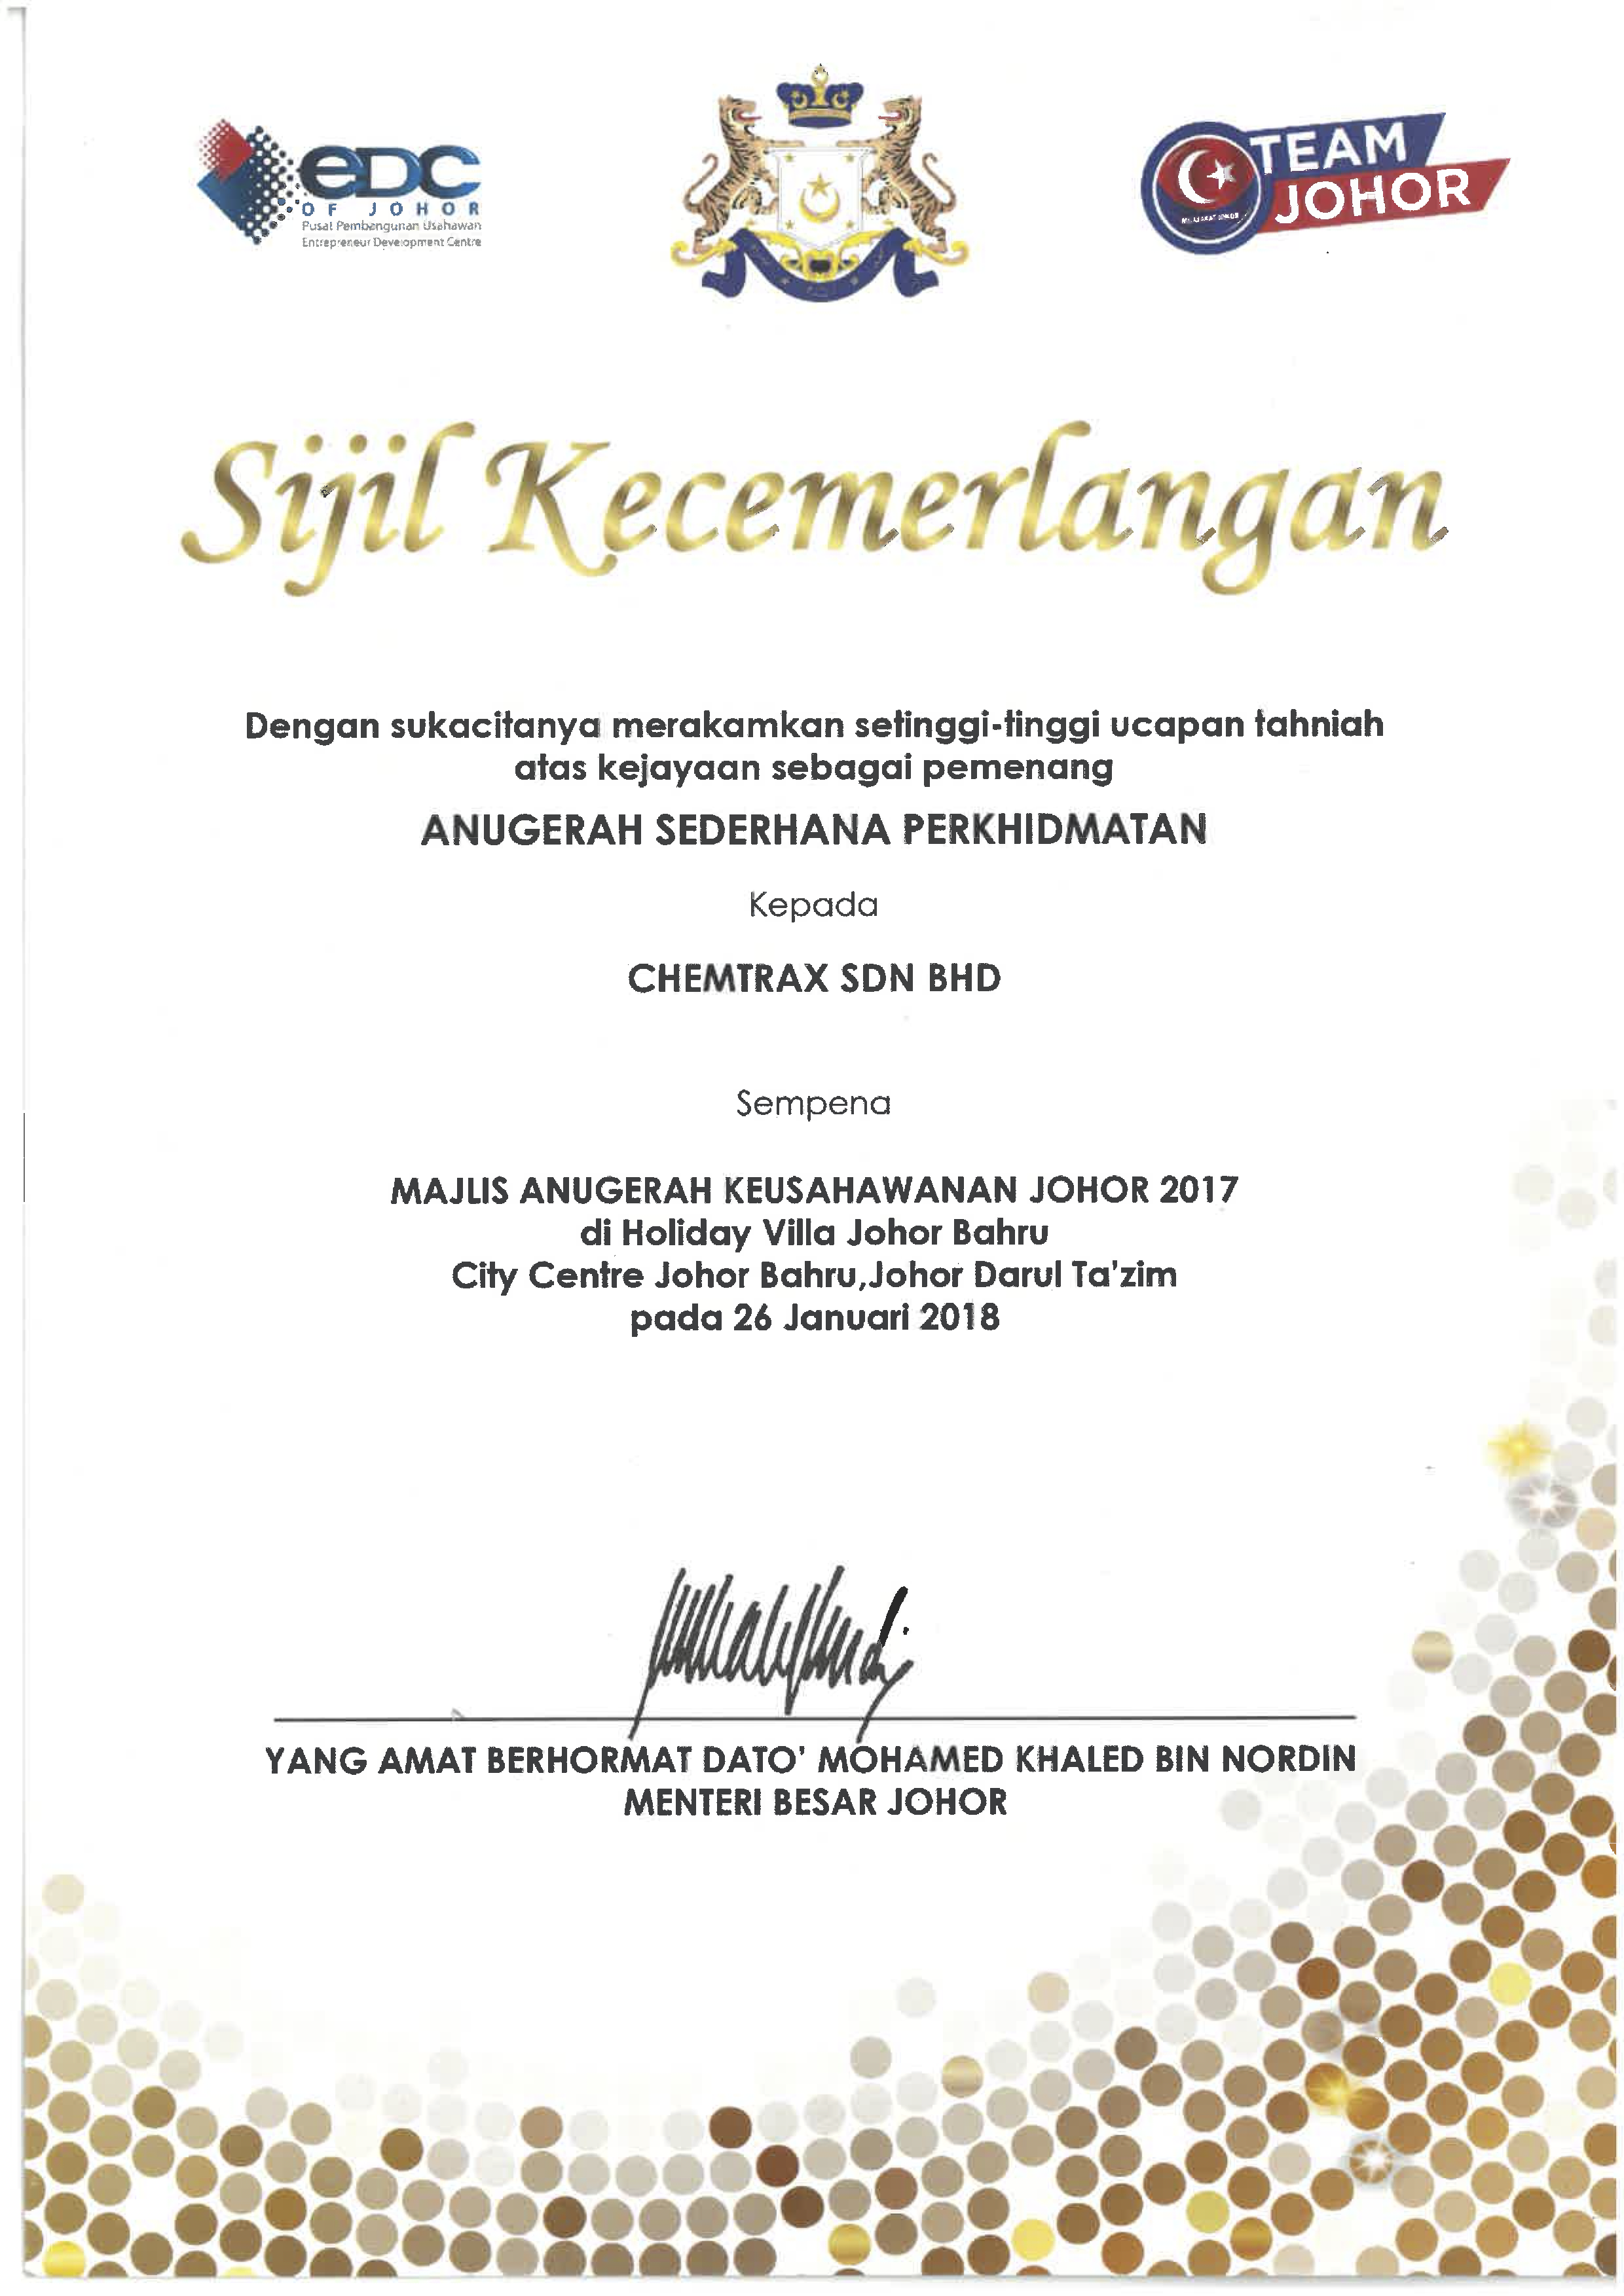 6. Majlis Anugerah Keusahawanan Johor.png